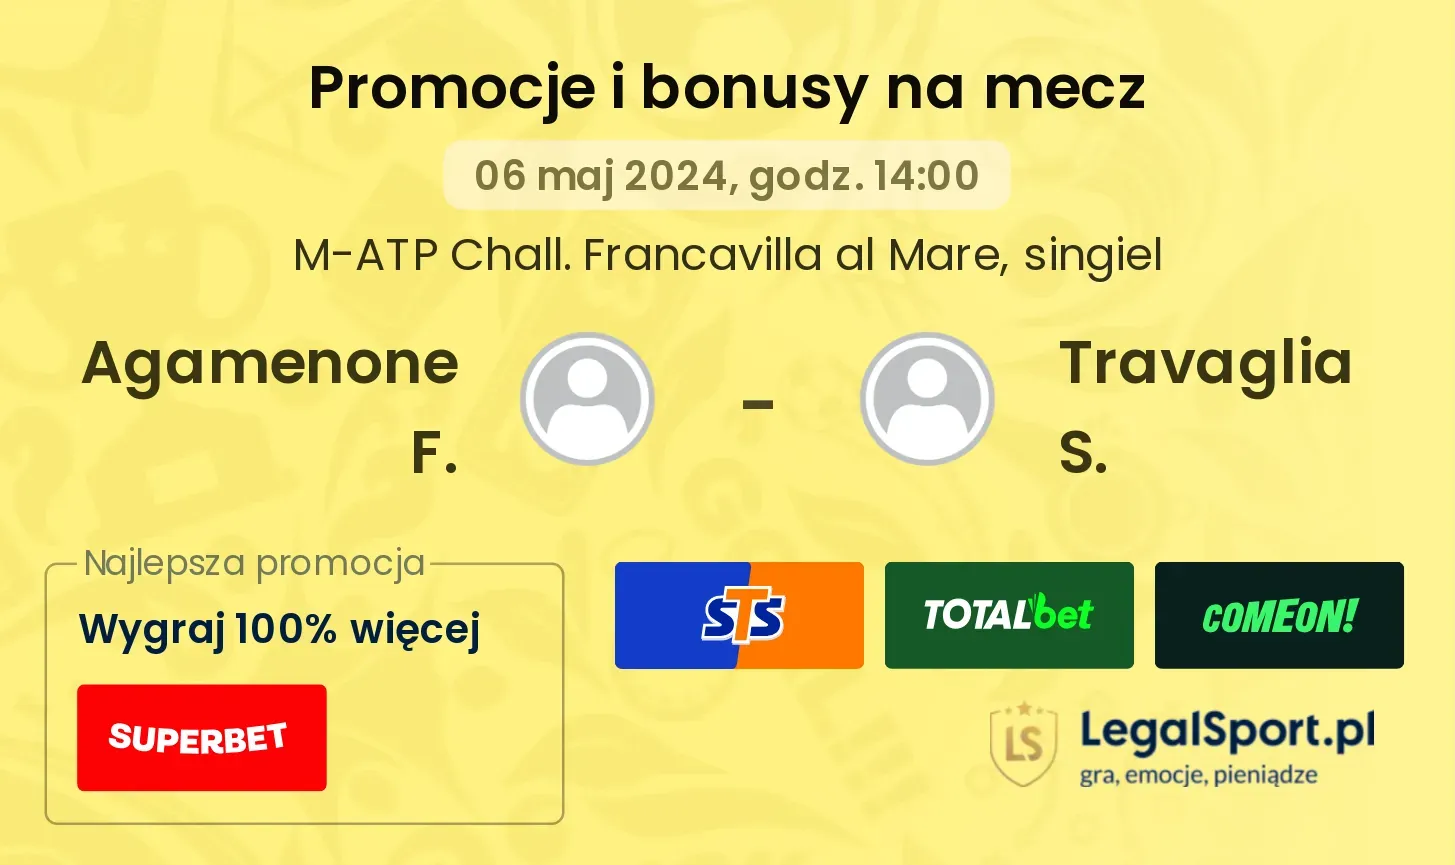 Agamenone F. - Travaglia S. promocje bonusy na mecz